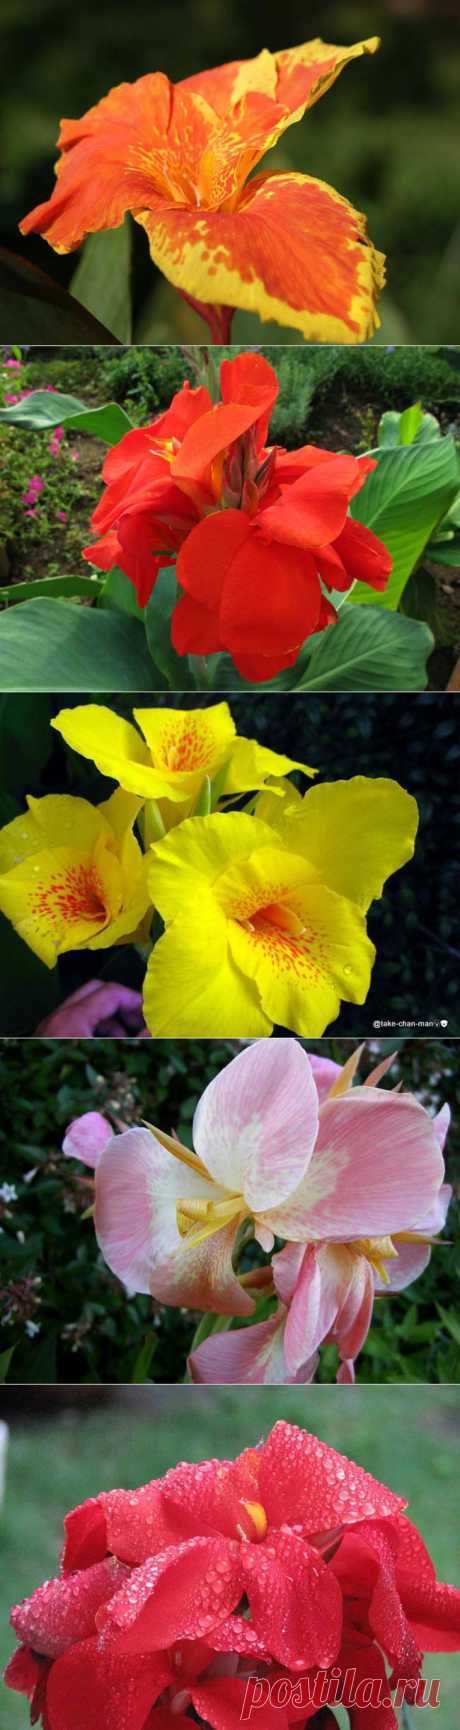 Канны - декоративные цветы | Блог ZooFitoSfera о растениях, животных и интересном